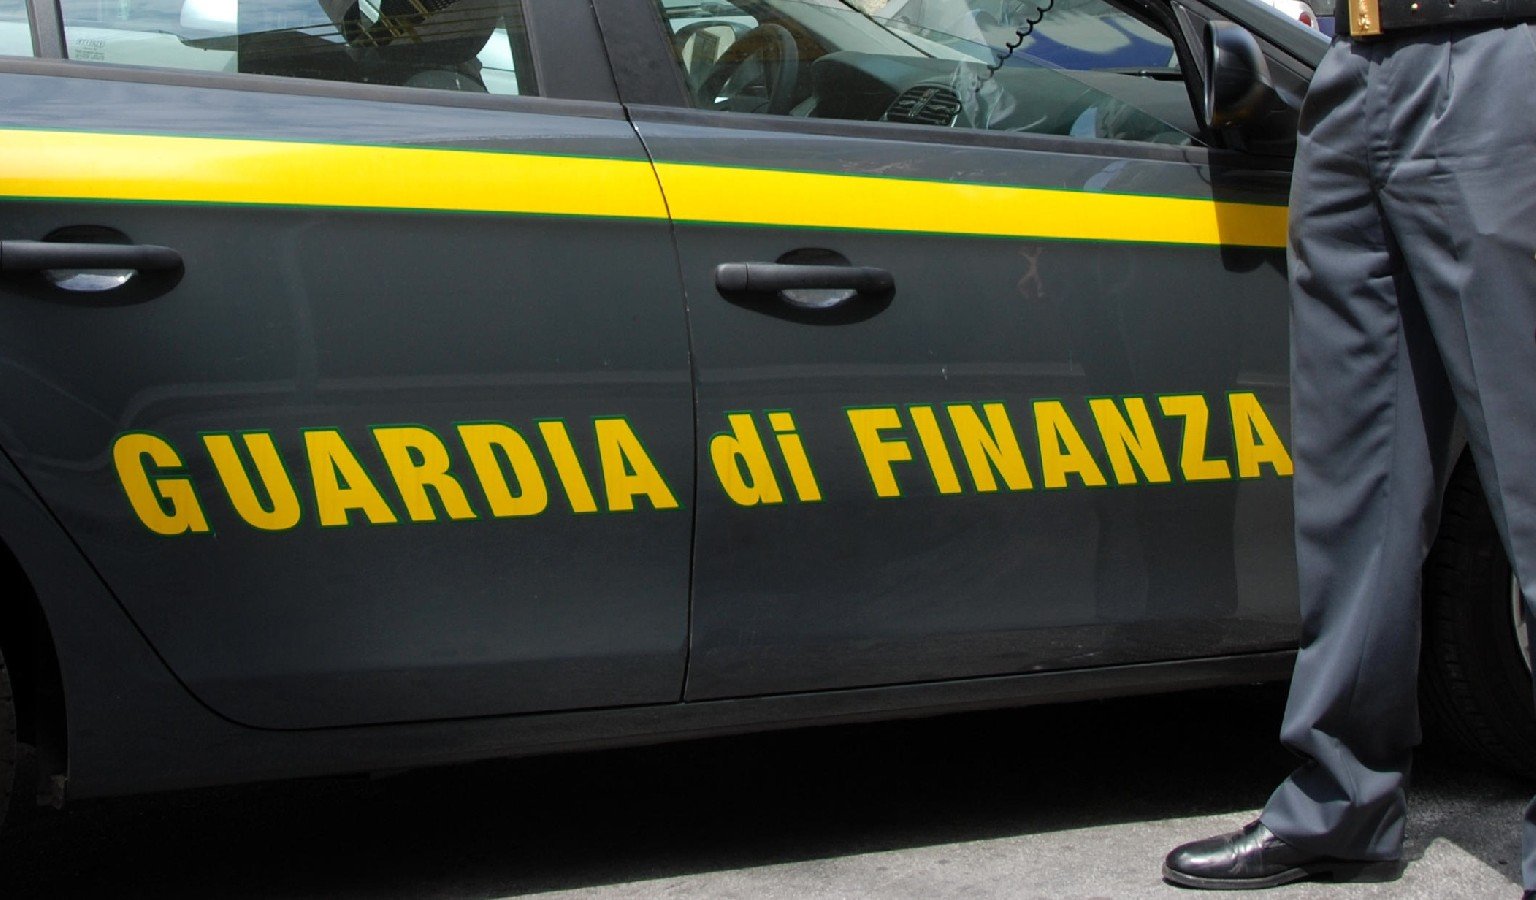 'Frode carosello' su pneumatici, sequestri per 10milioni di euro a Savona